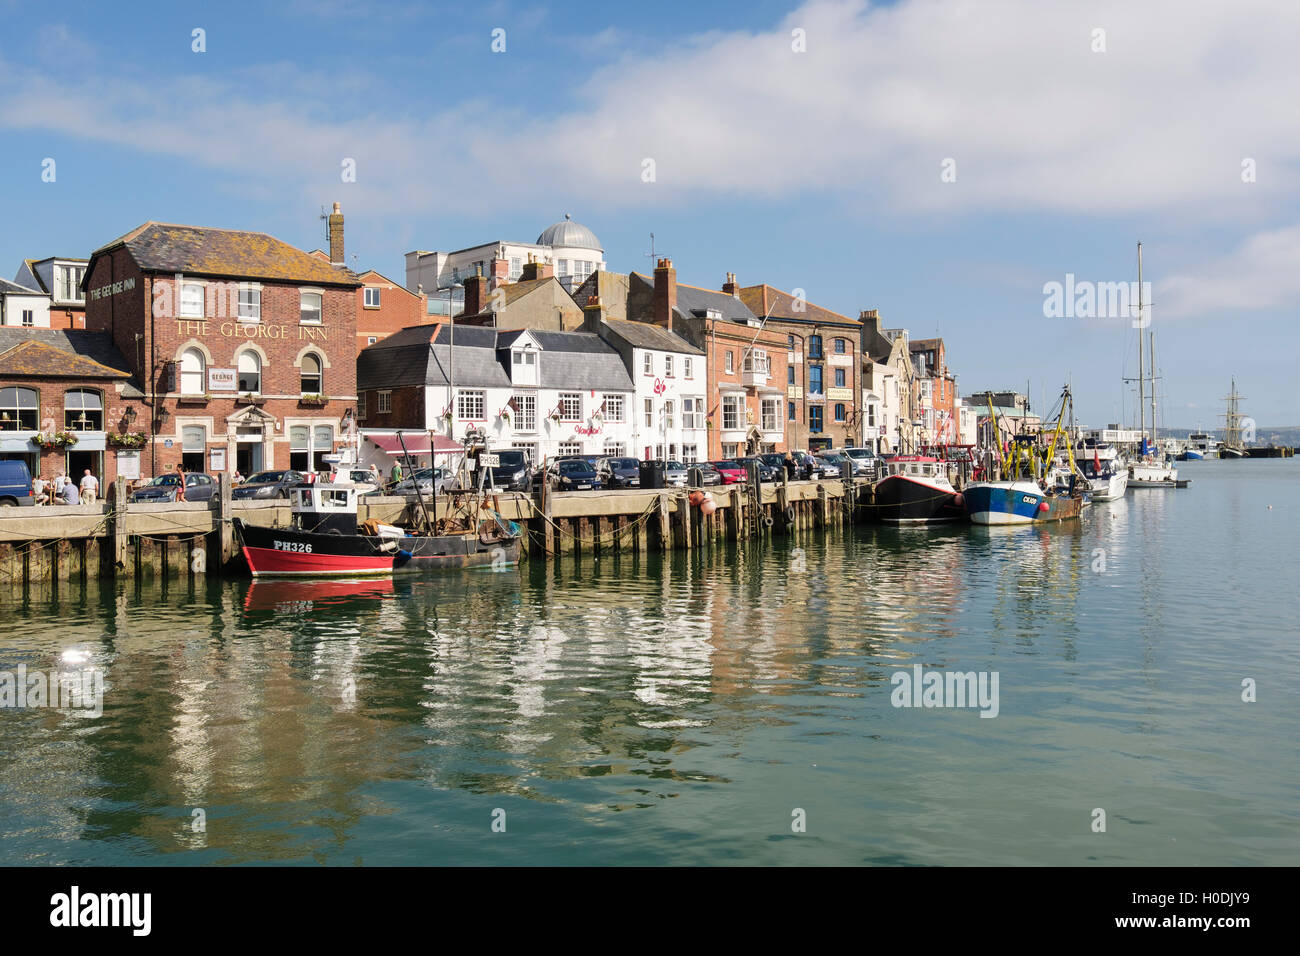 Bateaux de pêche amarré à Custom House Quay à Weymouth avant-port. Melcombe Regis, Weymouth, Dorset, Angleterre, Royaume-Uni, Angleterre Banque D'Images